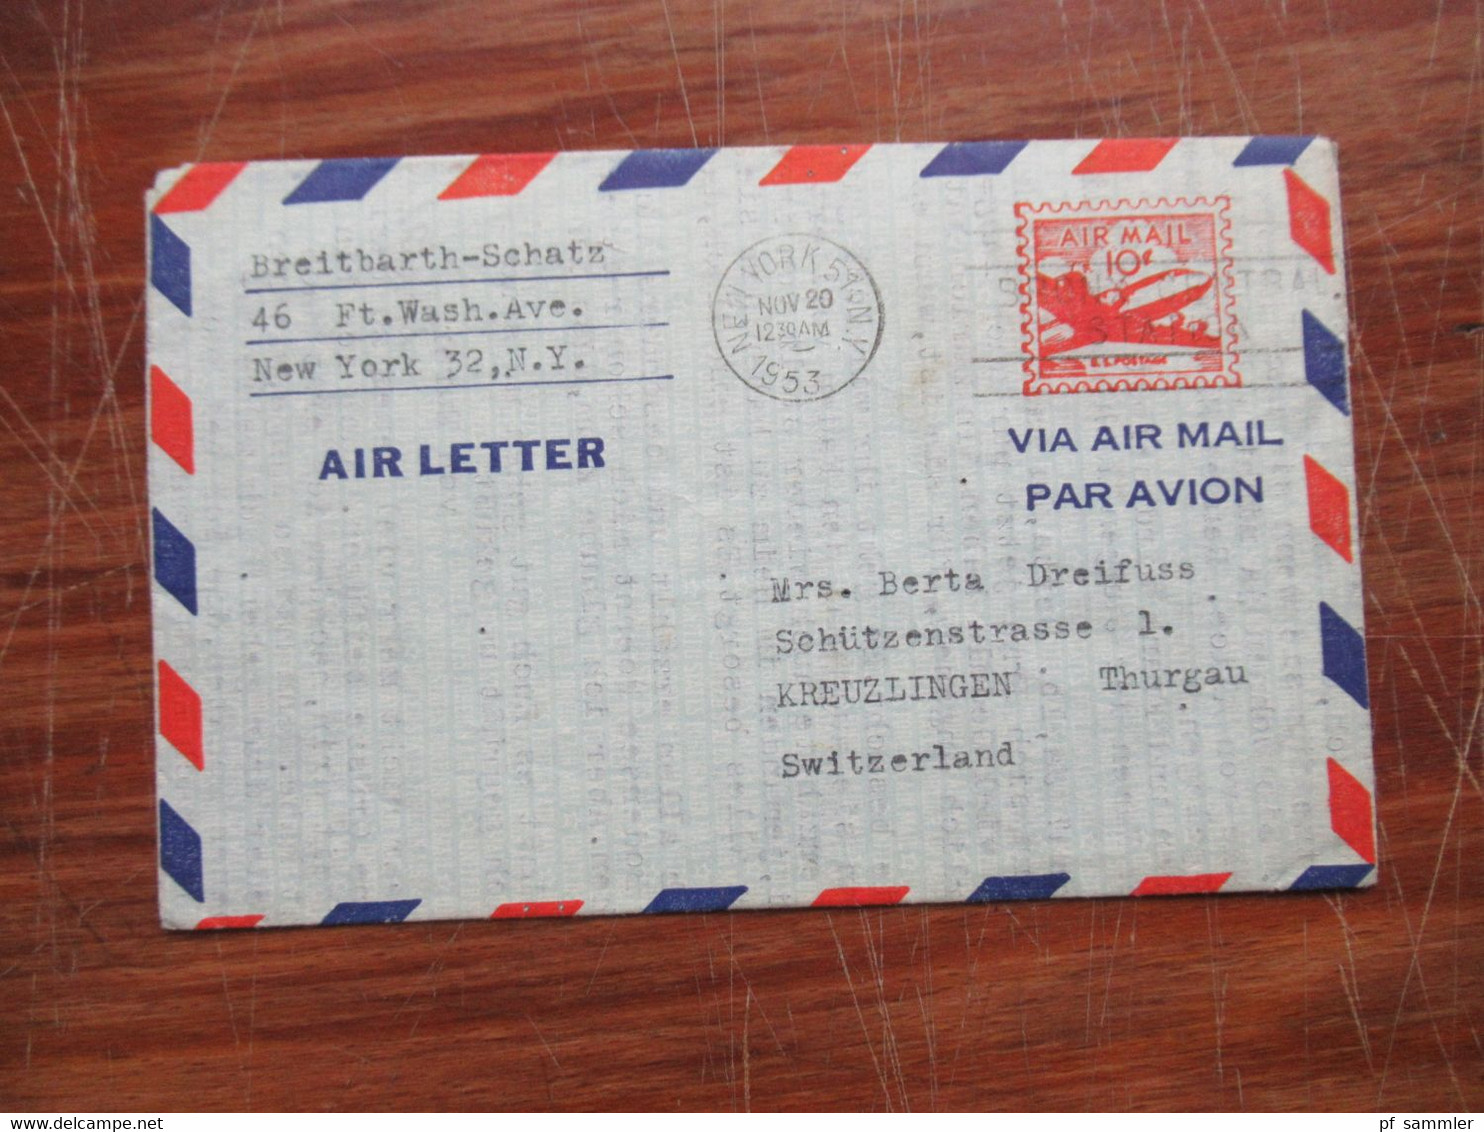 Alle Welt Air Letter / Aerogramme 20 Stück ab 1953 - Anfang 1960er Jahre Indien mit Zusatzfrankatur!